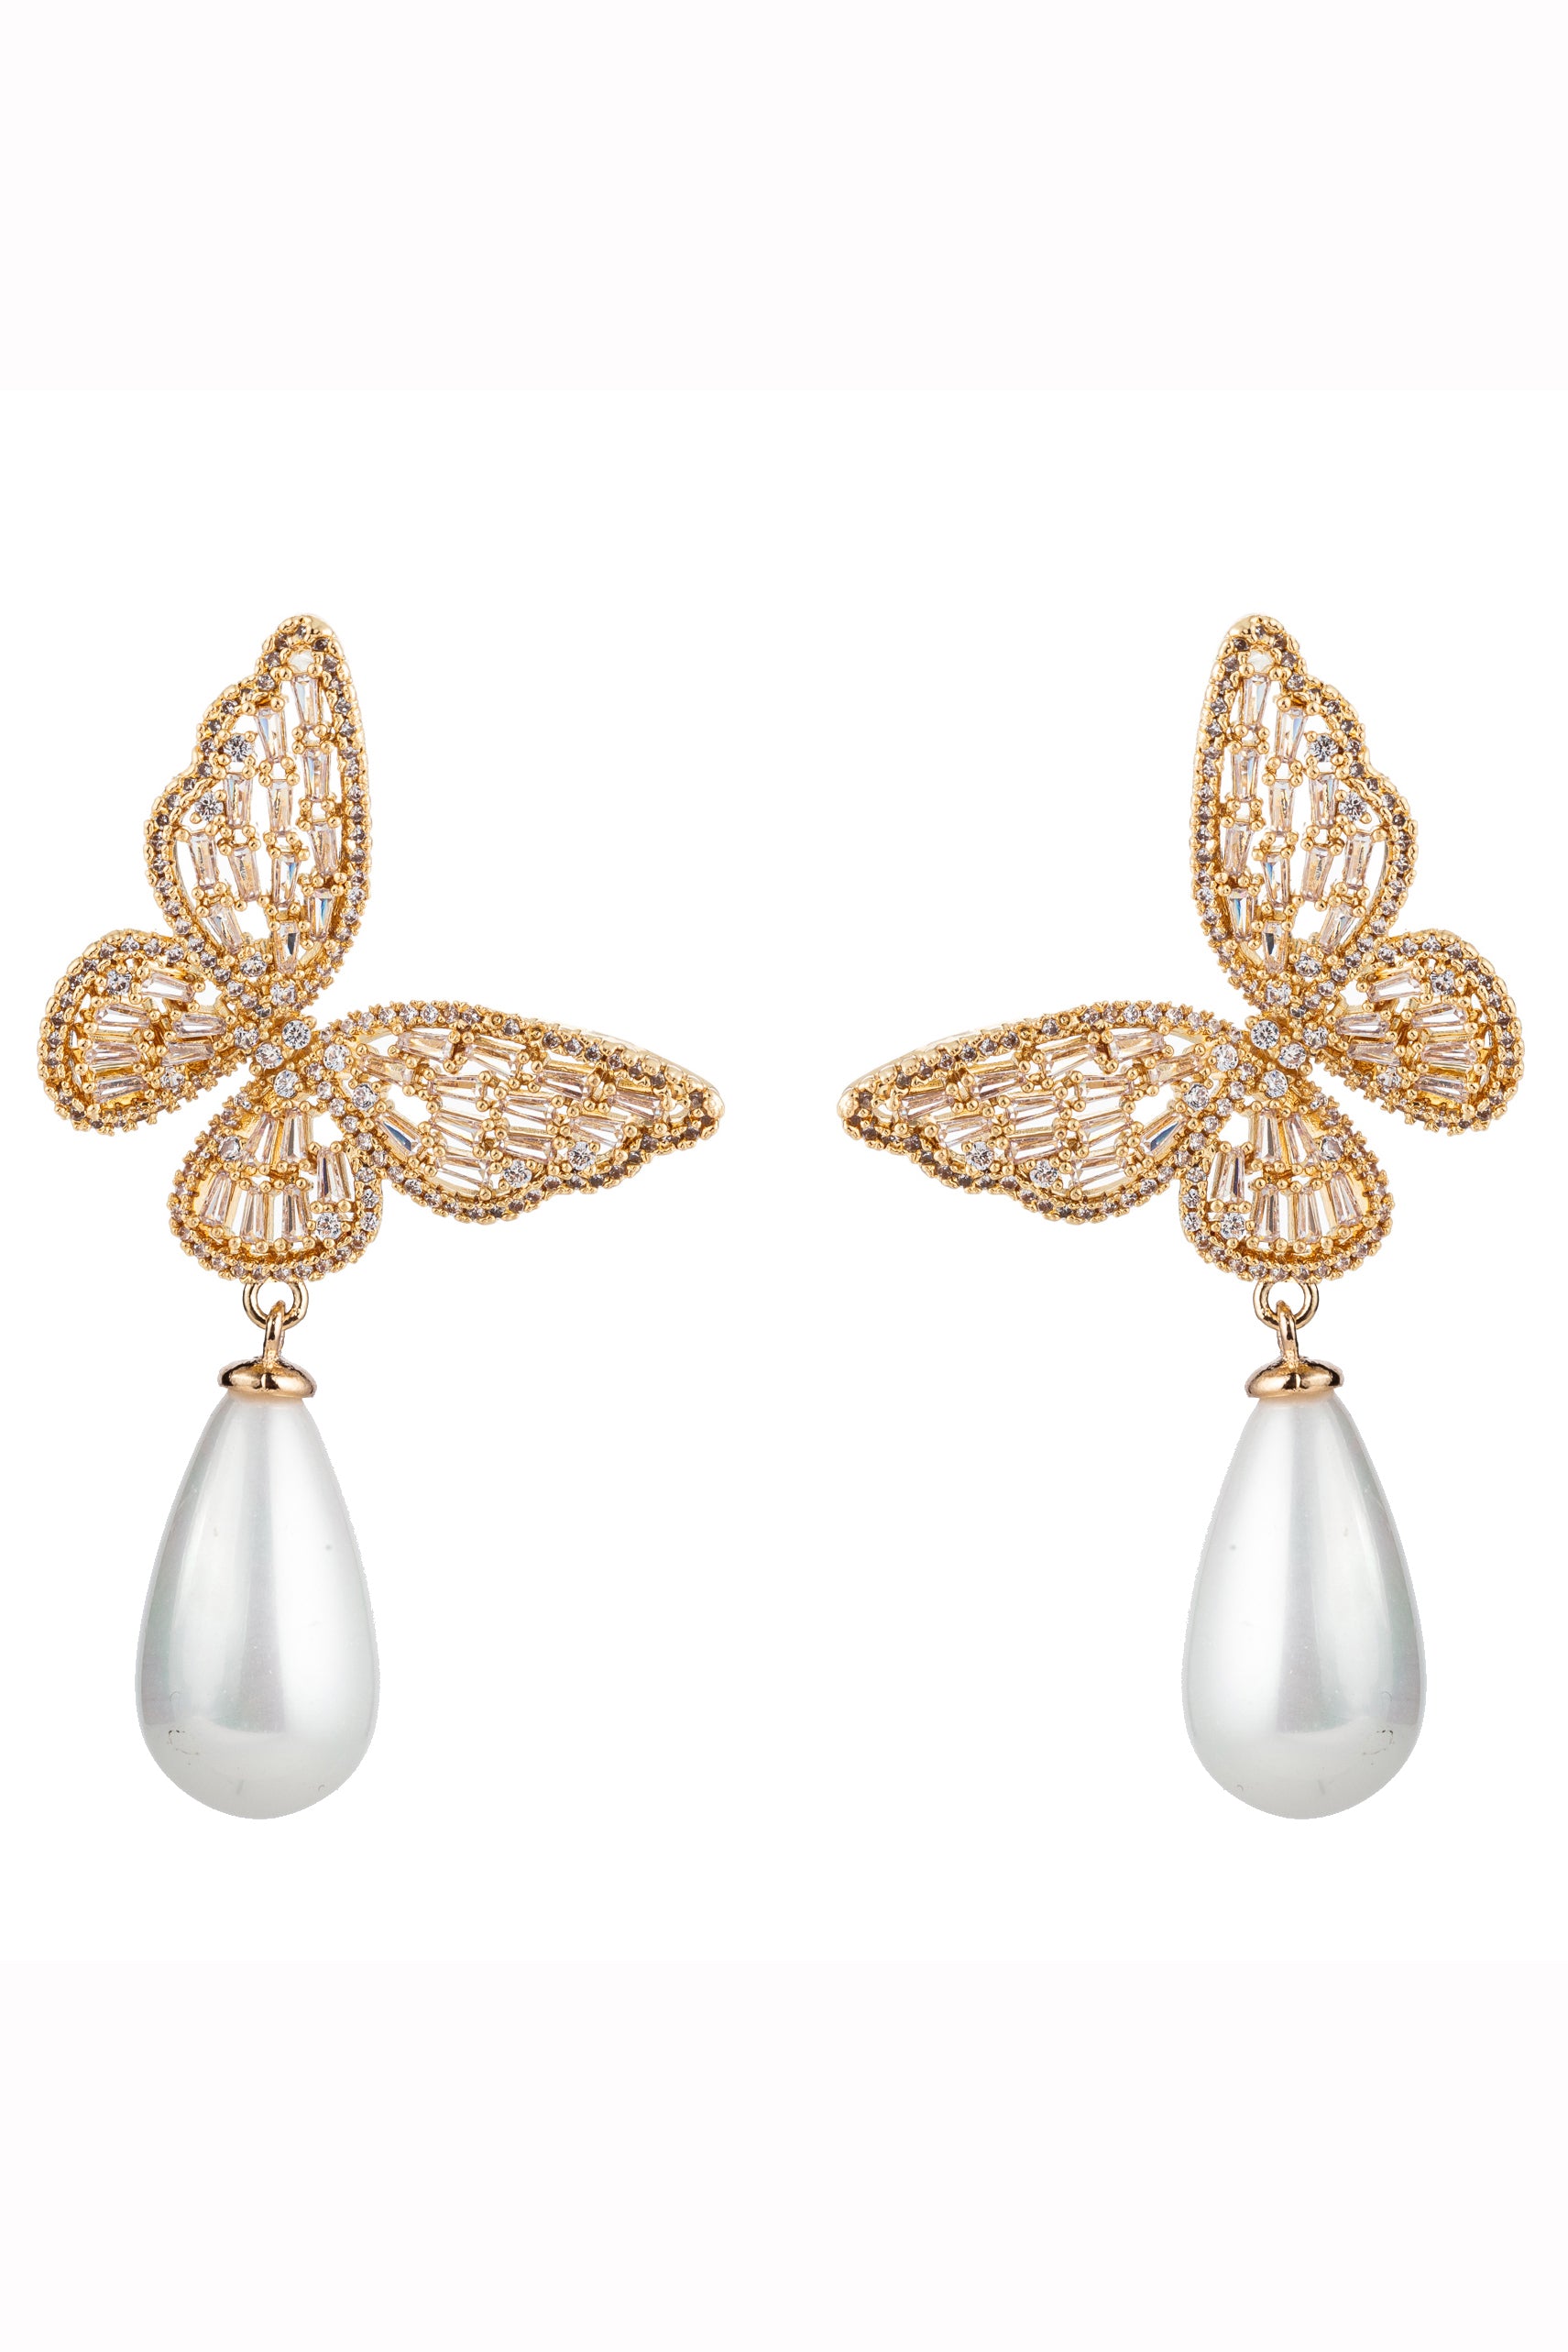 Amazon.com: 18K Gold Plated Dainty Vivid Butterfly Tassel Earrings Silver  Post CZ 3D butterfly Drop Dangle Earrings Fairy Earrings for Women Girls:  Clothing, Shoes & Jewelry